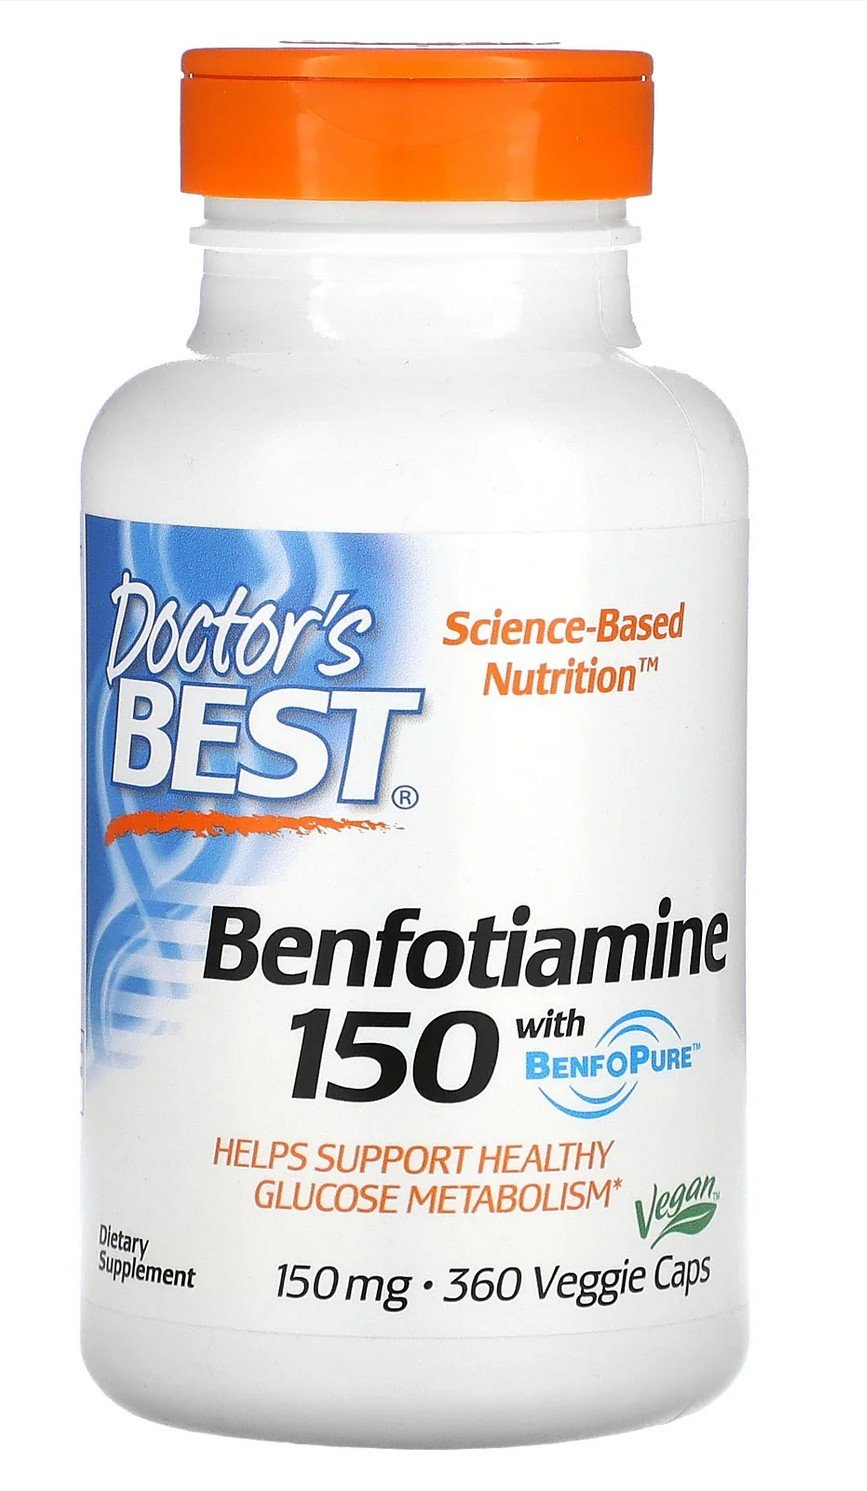 Doctors Best Benfotiamine 150mg with BenoPure 360 VegCap